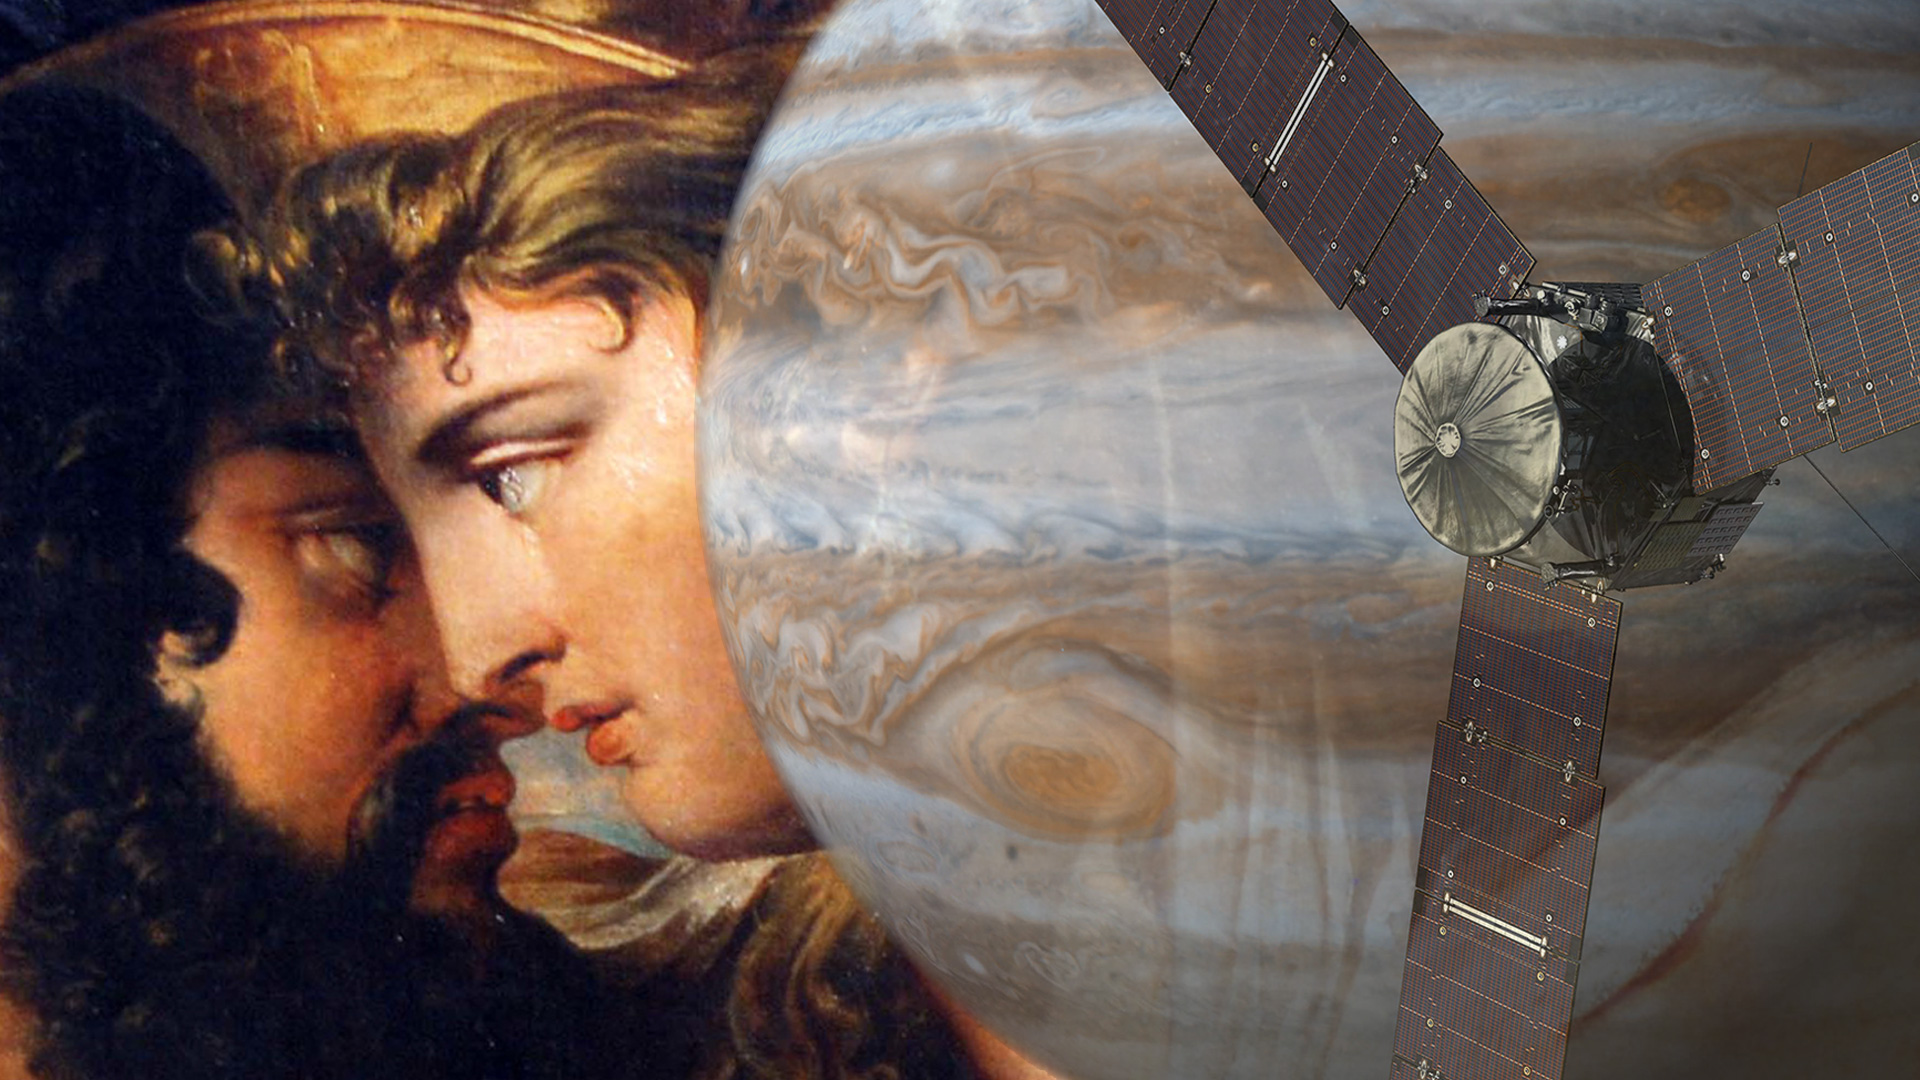 When Juno meets Jupiter